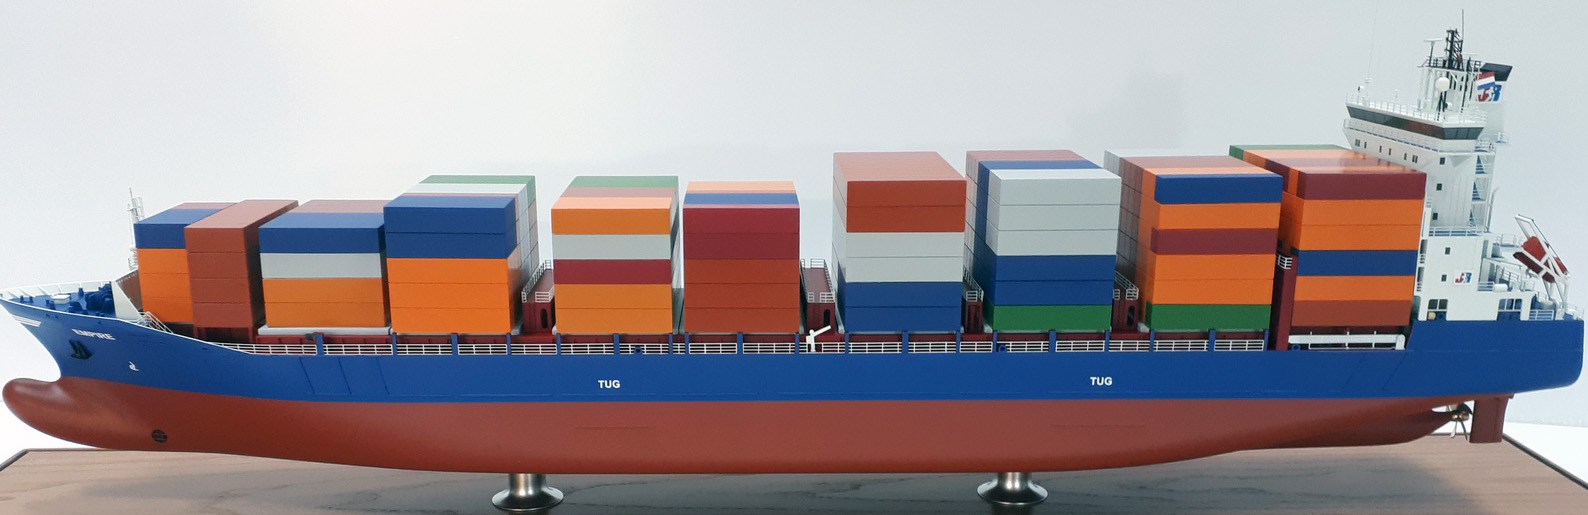 Containerfrachter 'Empire' Seitenansicht